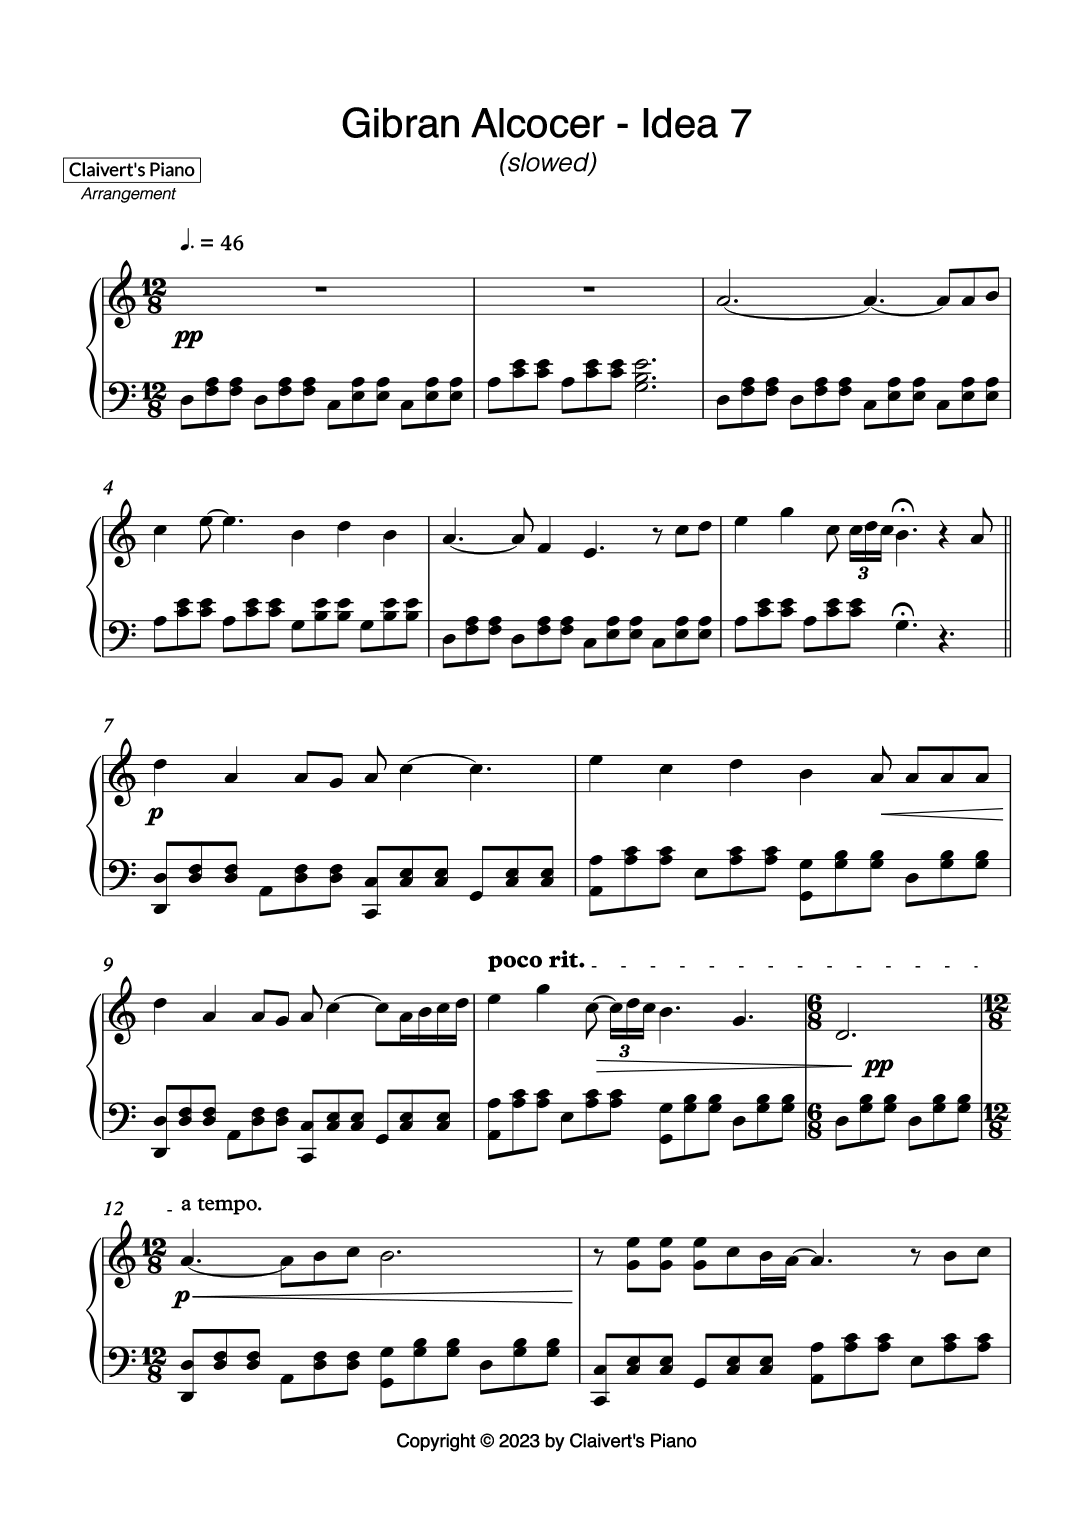 Gibran Alcocer - Idea 7 (slowed) - Claivert's Piano x SlowEasyPiano